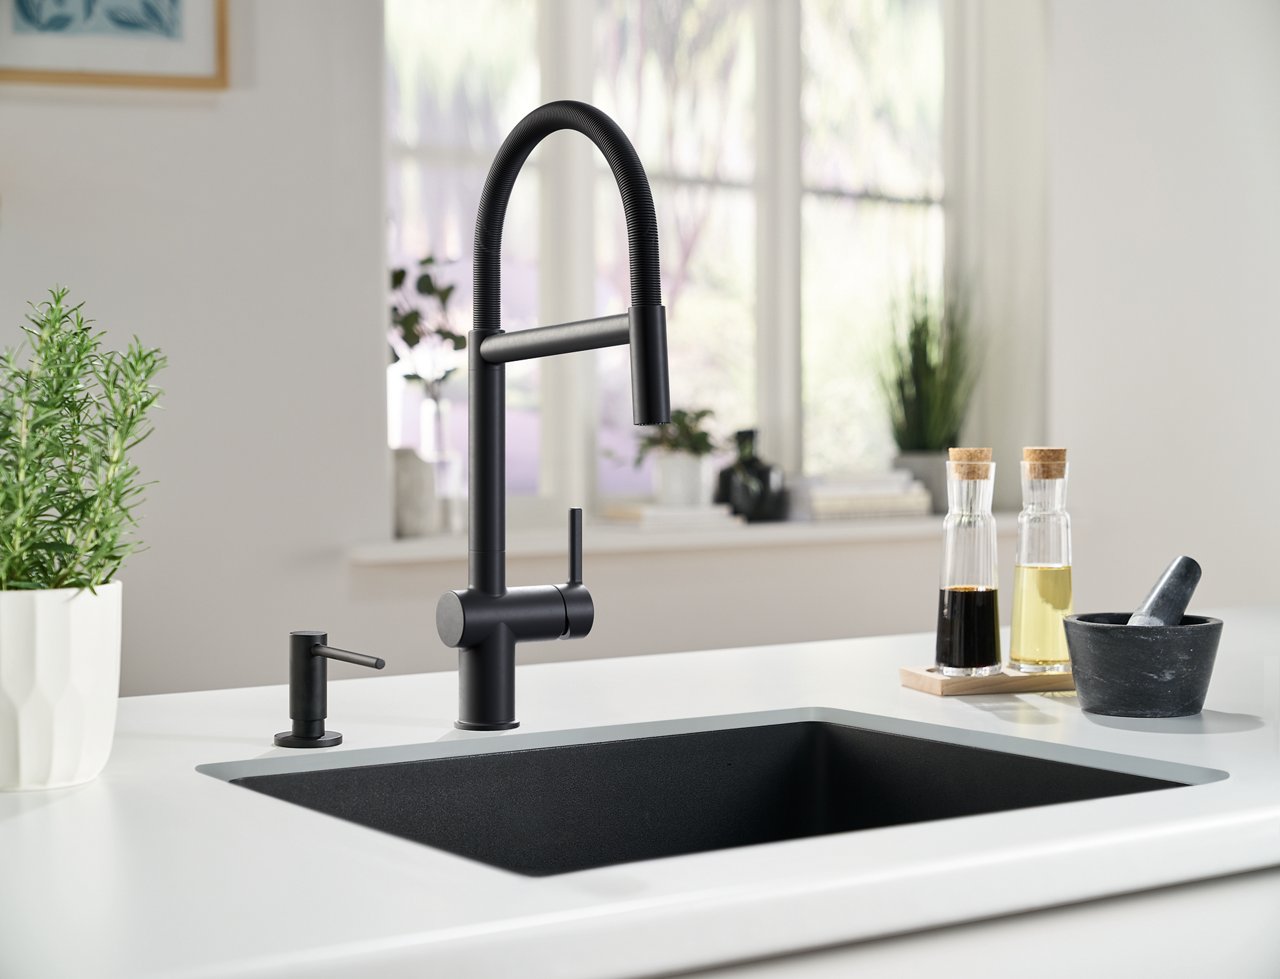 Active Semi-Pro Faucet in Matte Black.